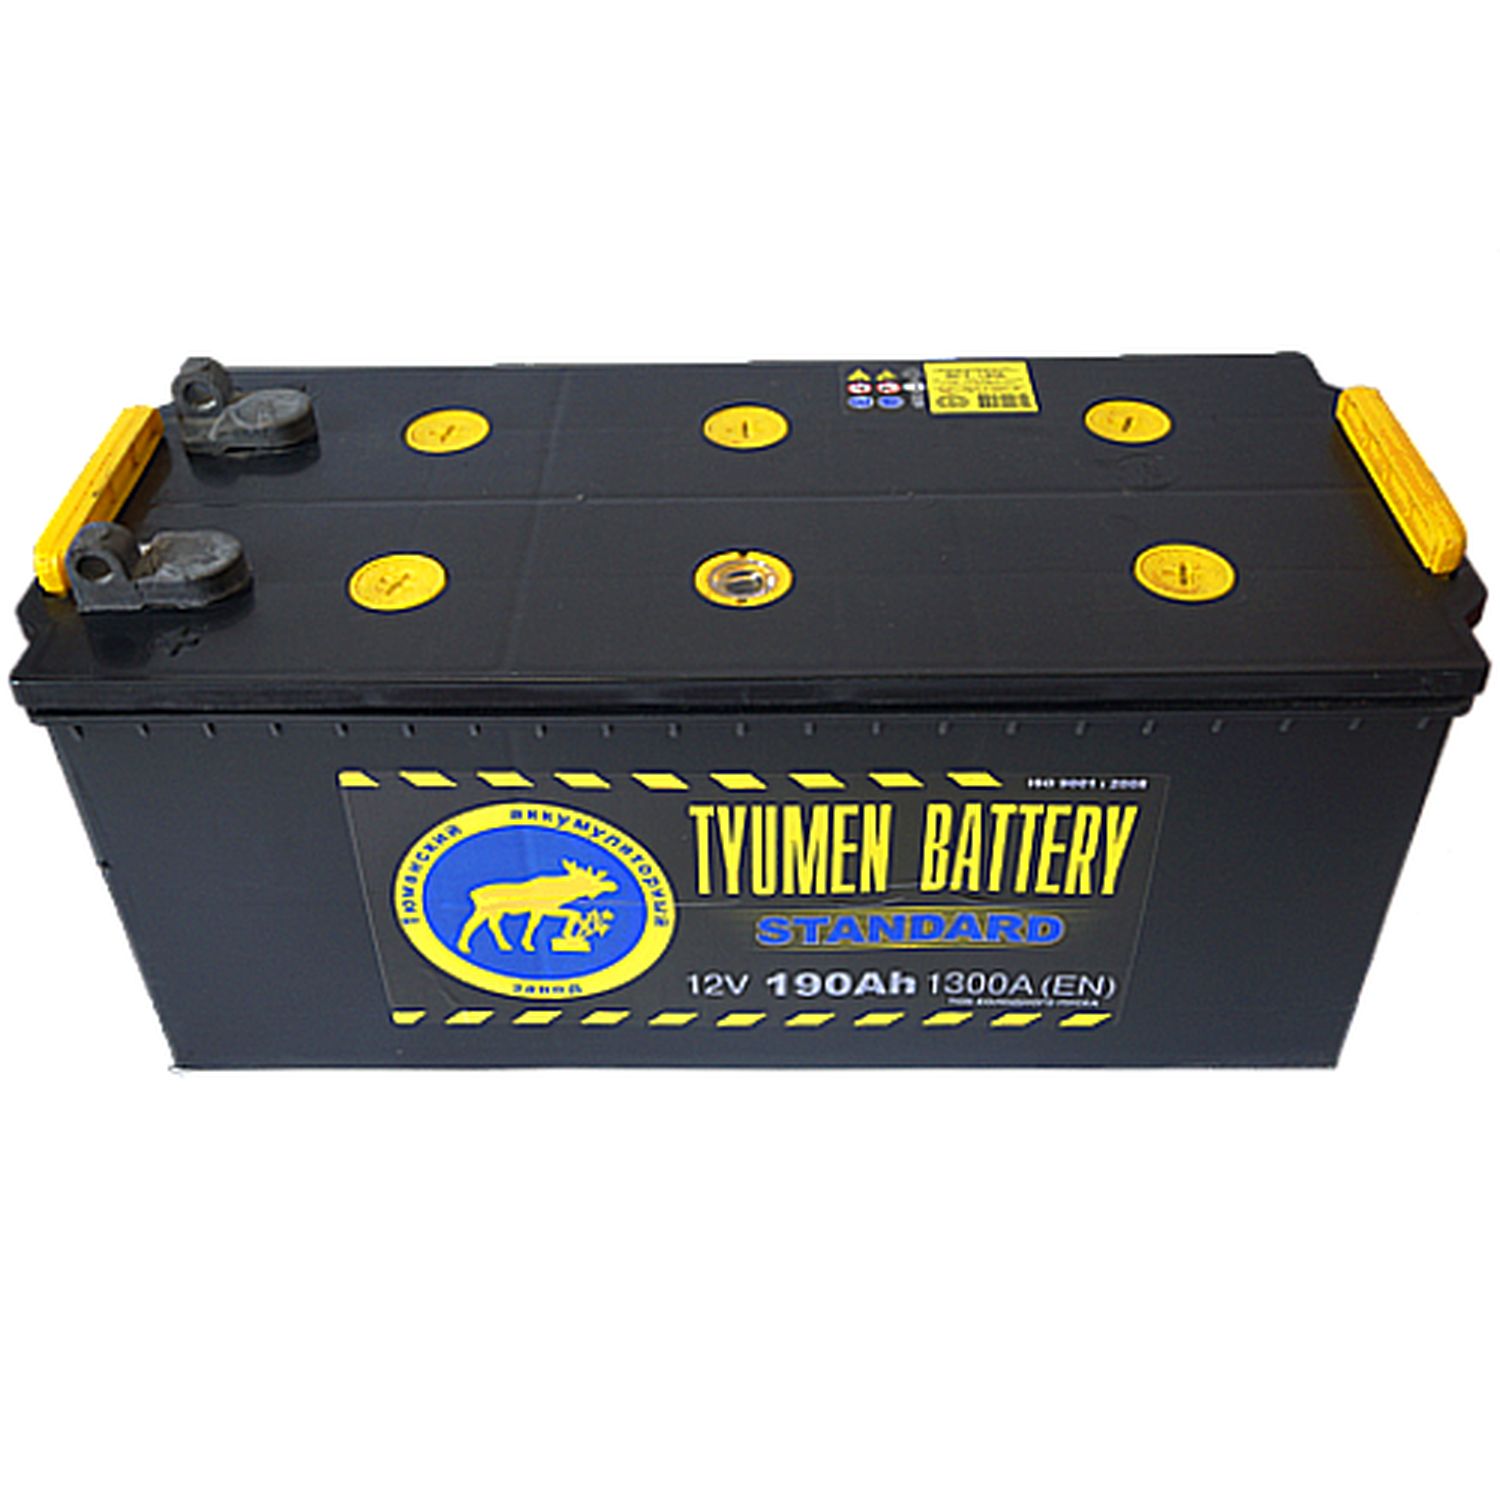 Автомобильный аккумулятор Tyumen Battery 6ст-190L Standard Конус, 190Ач, 1320 EN, конус, обр.